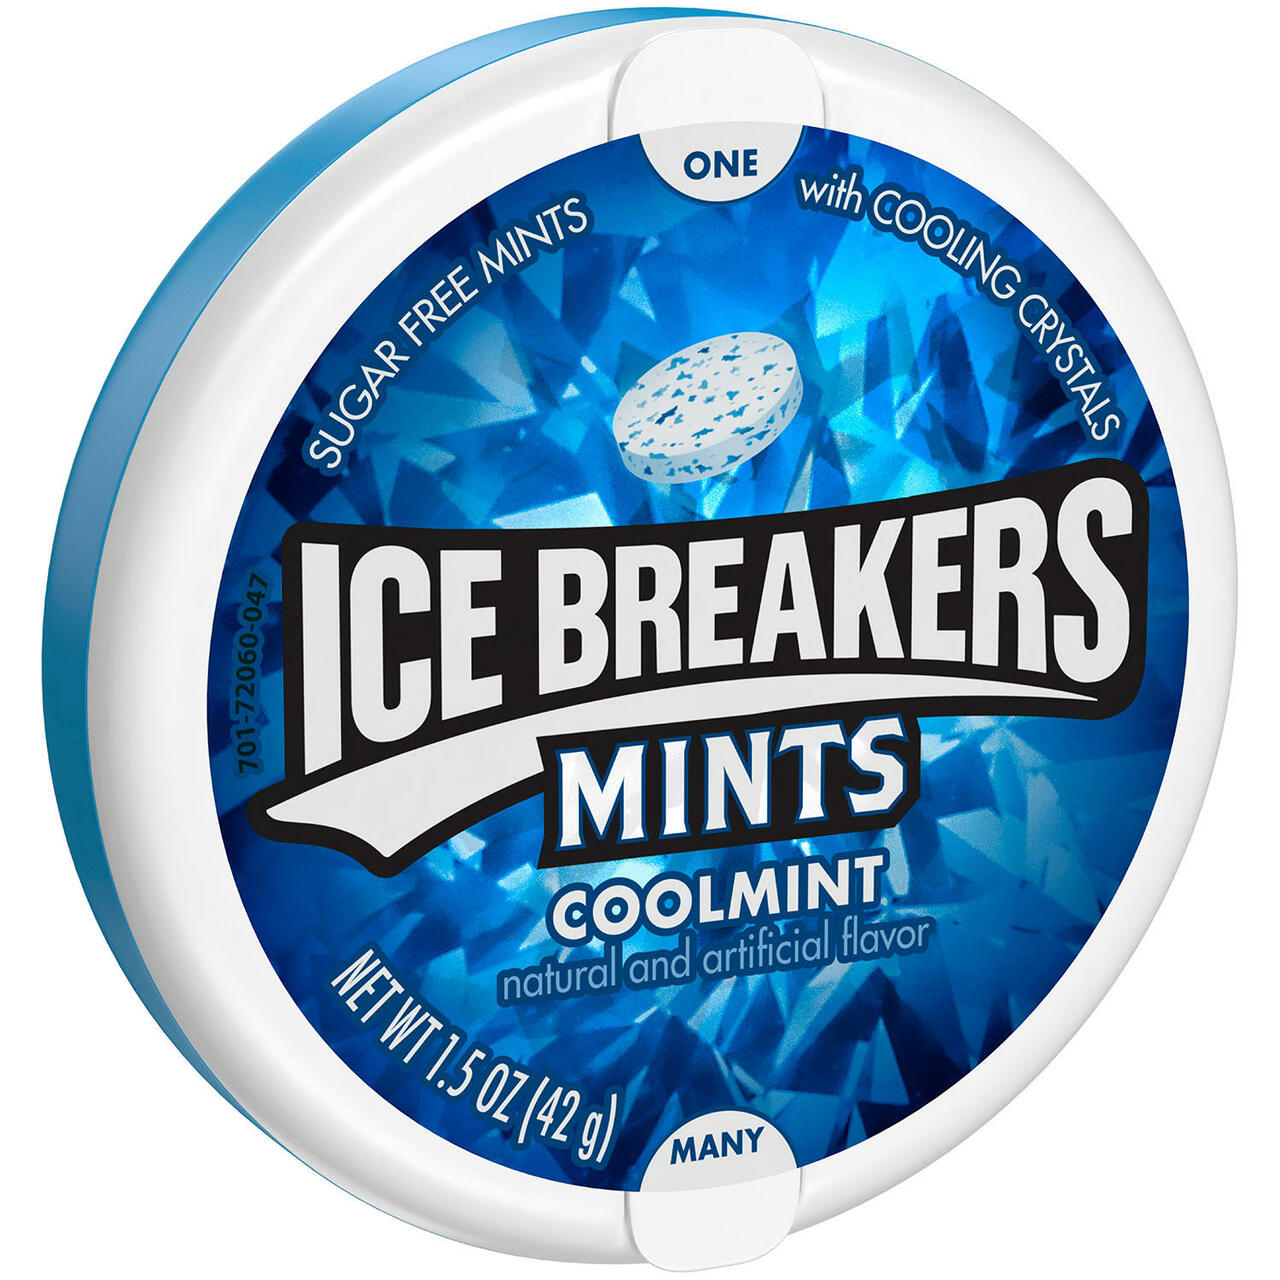 ICE BREAKERS MINTS COOLMINT 1.5 OZ